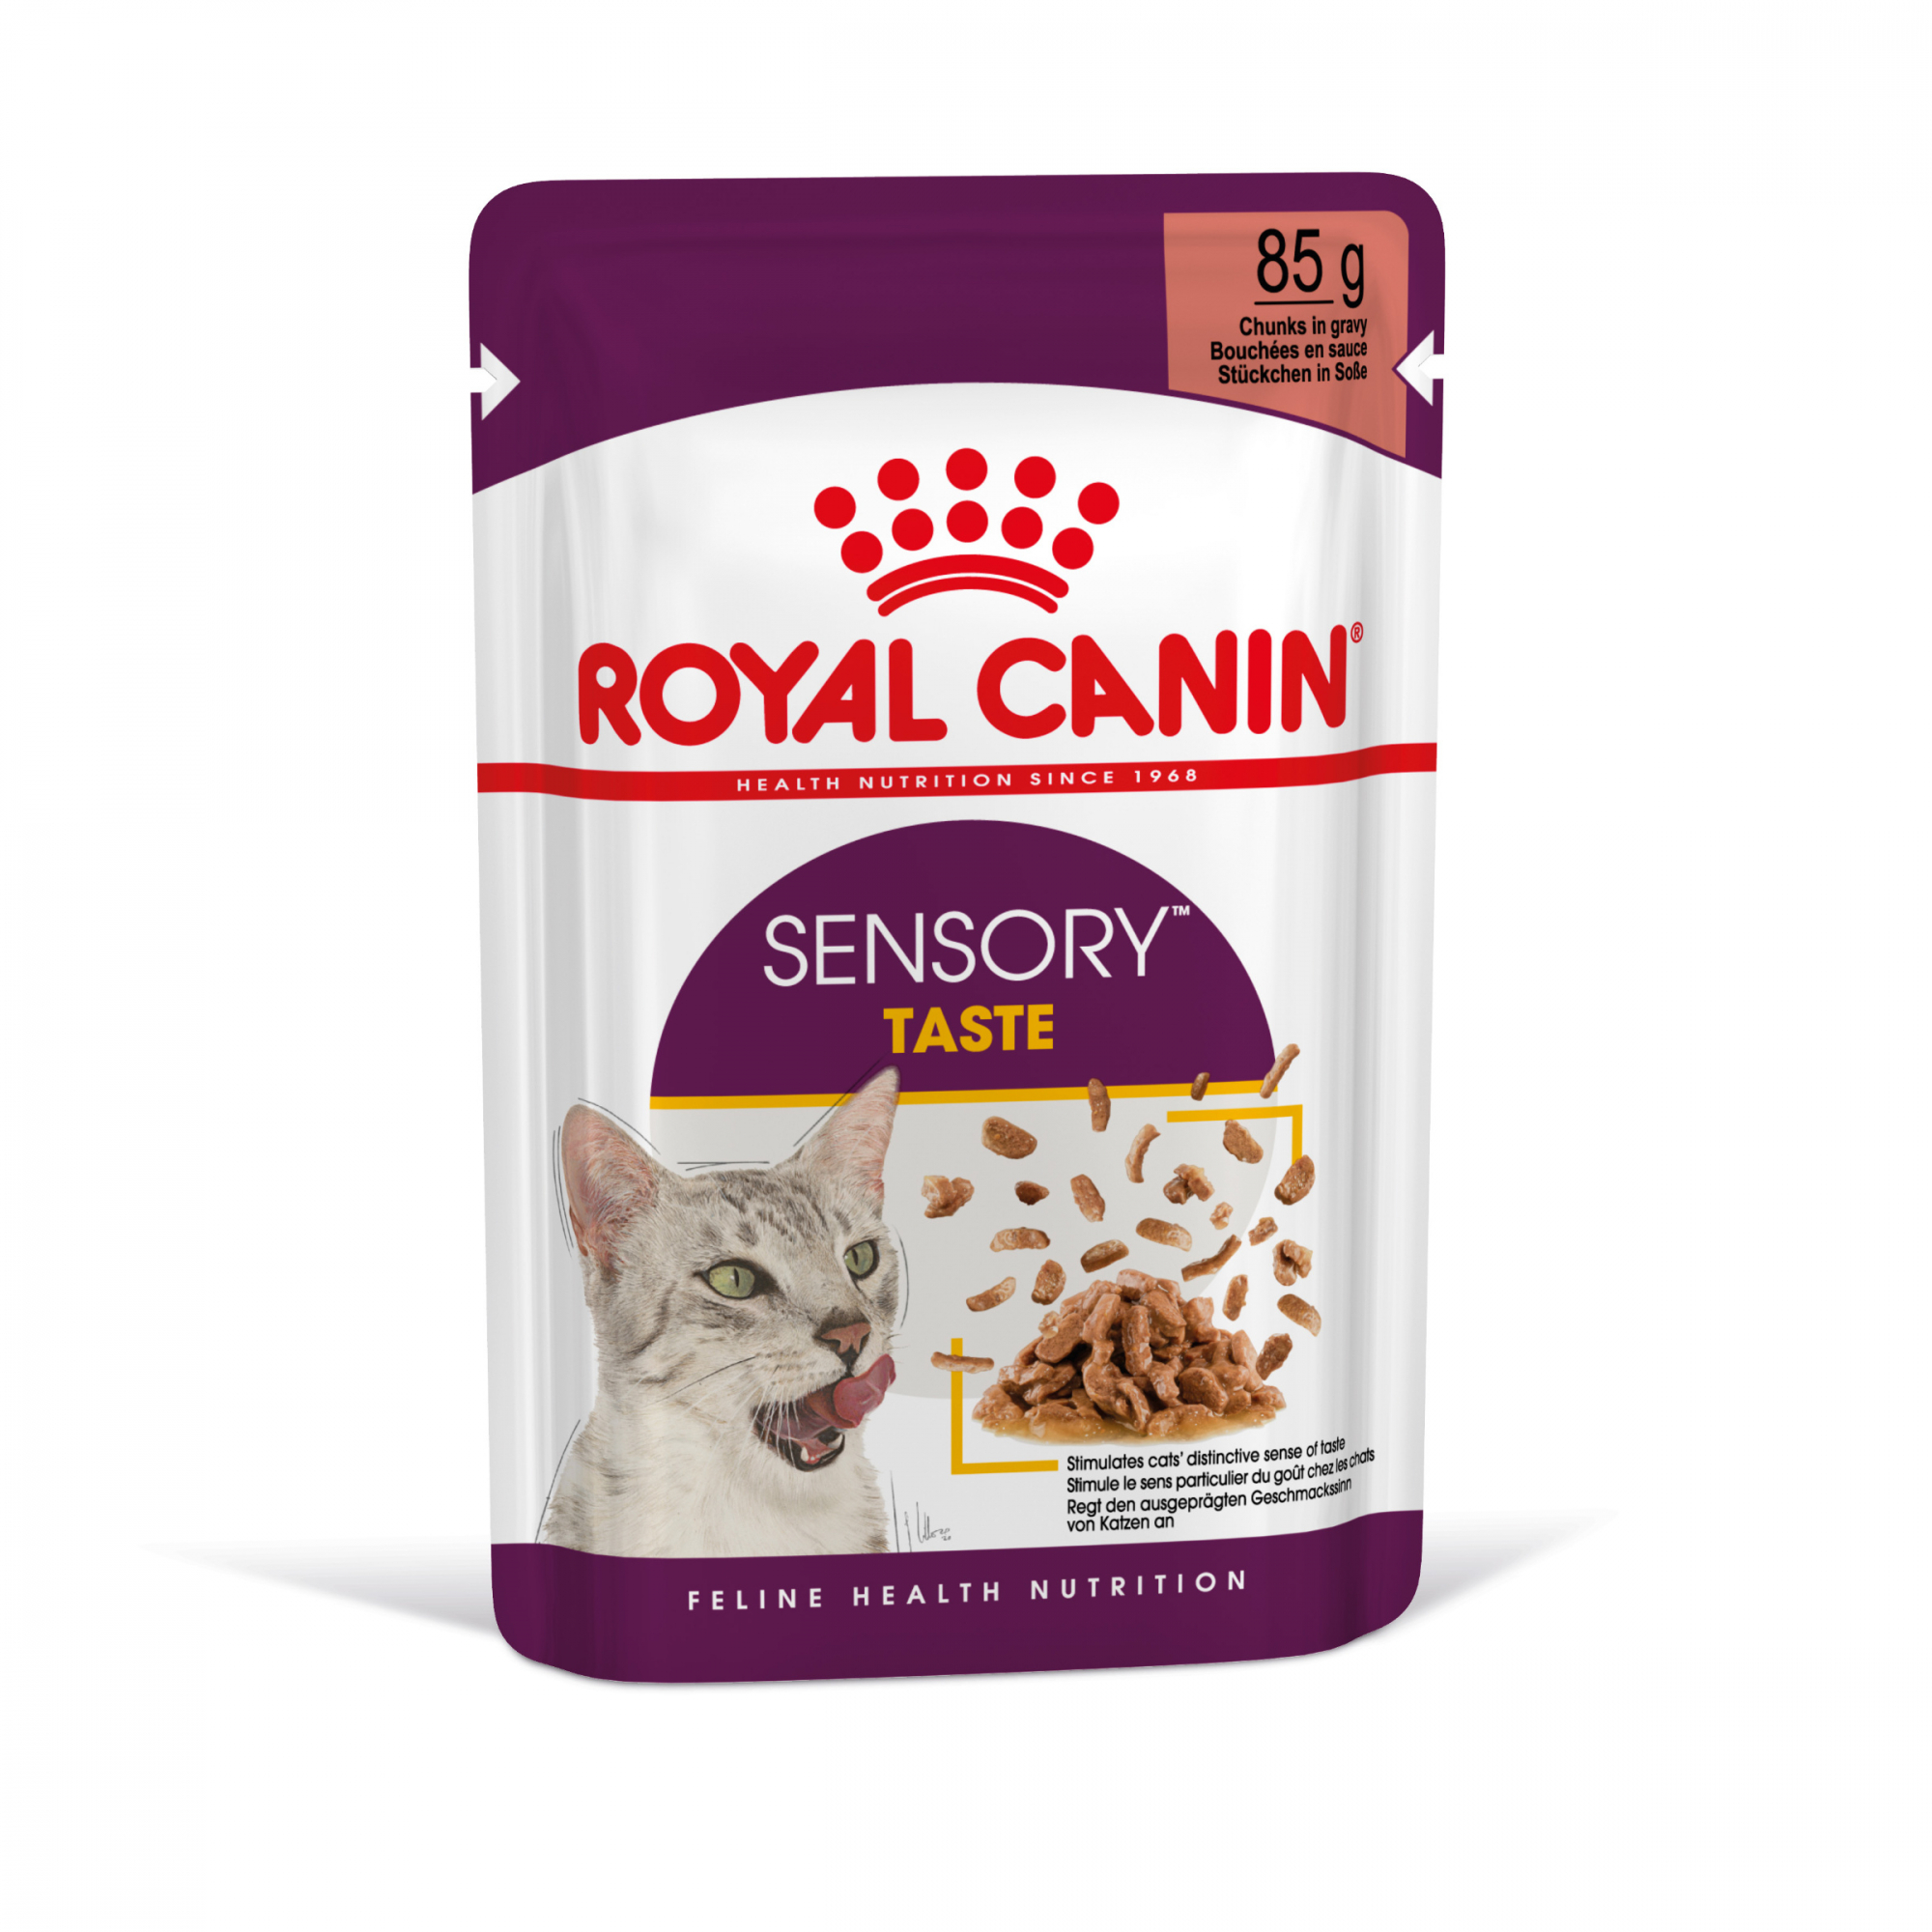 Royal Canin Sensory Taste patè in salsa per gatti